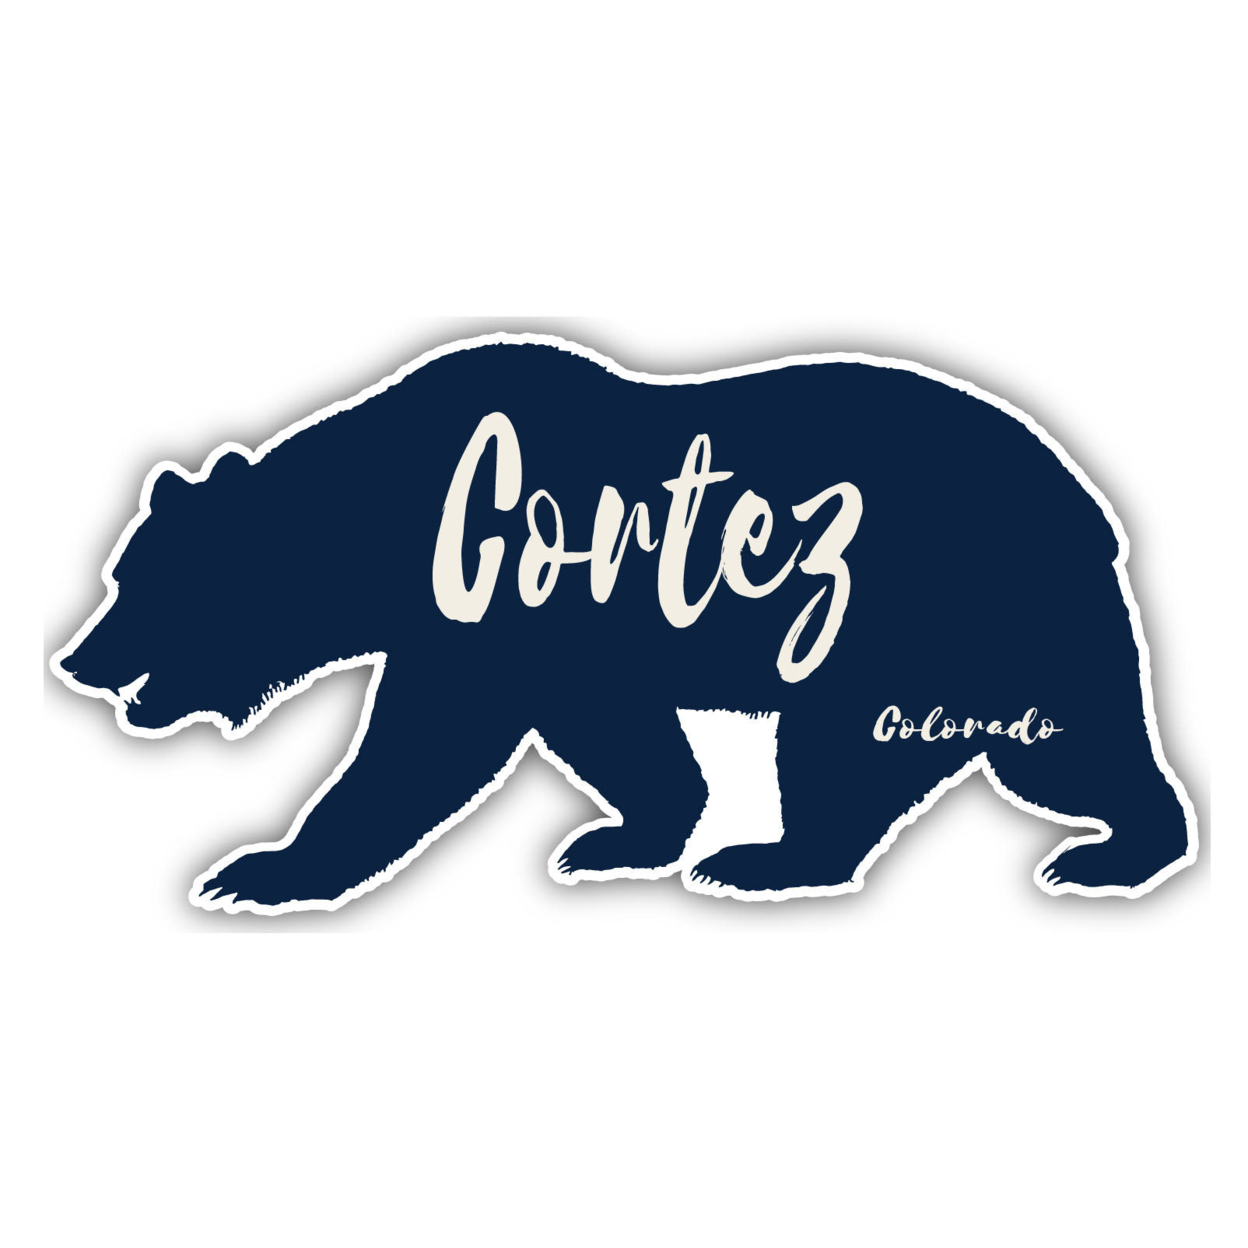 Cortez Colorado Souvenir Decorative Stickers (Choose Theme And Size) - Single Unit, 4-Inch, Tent